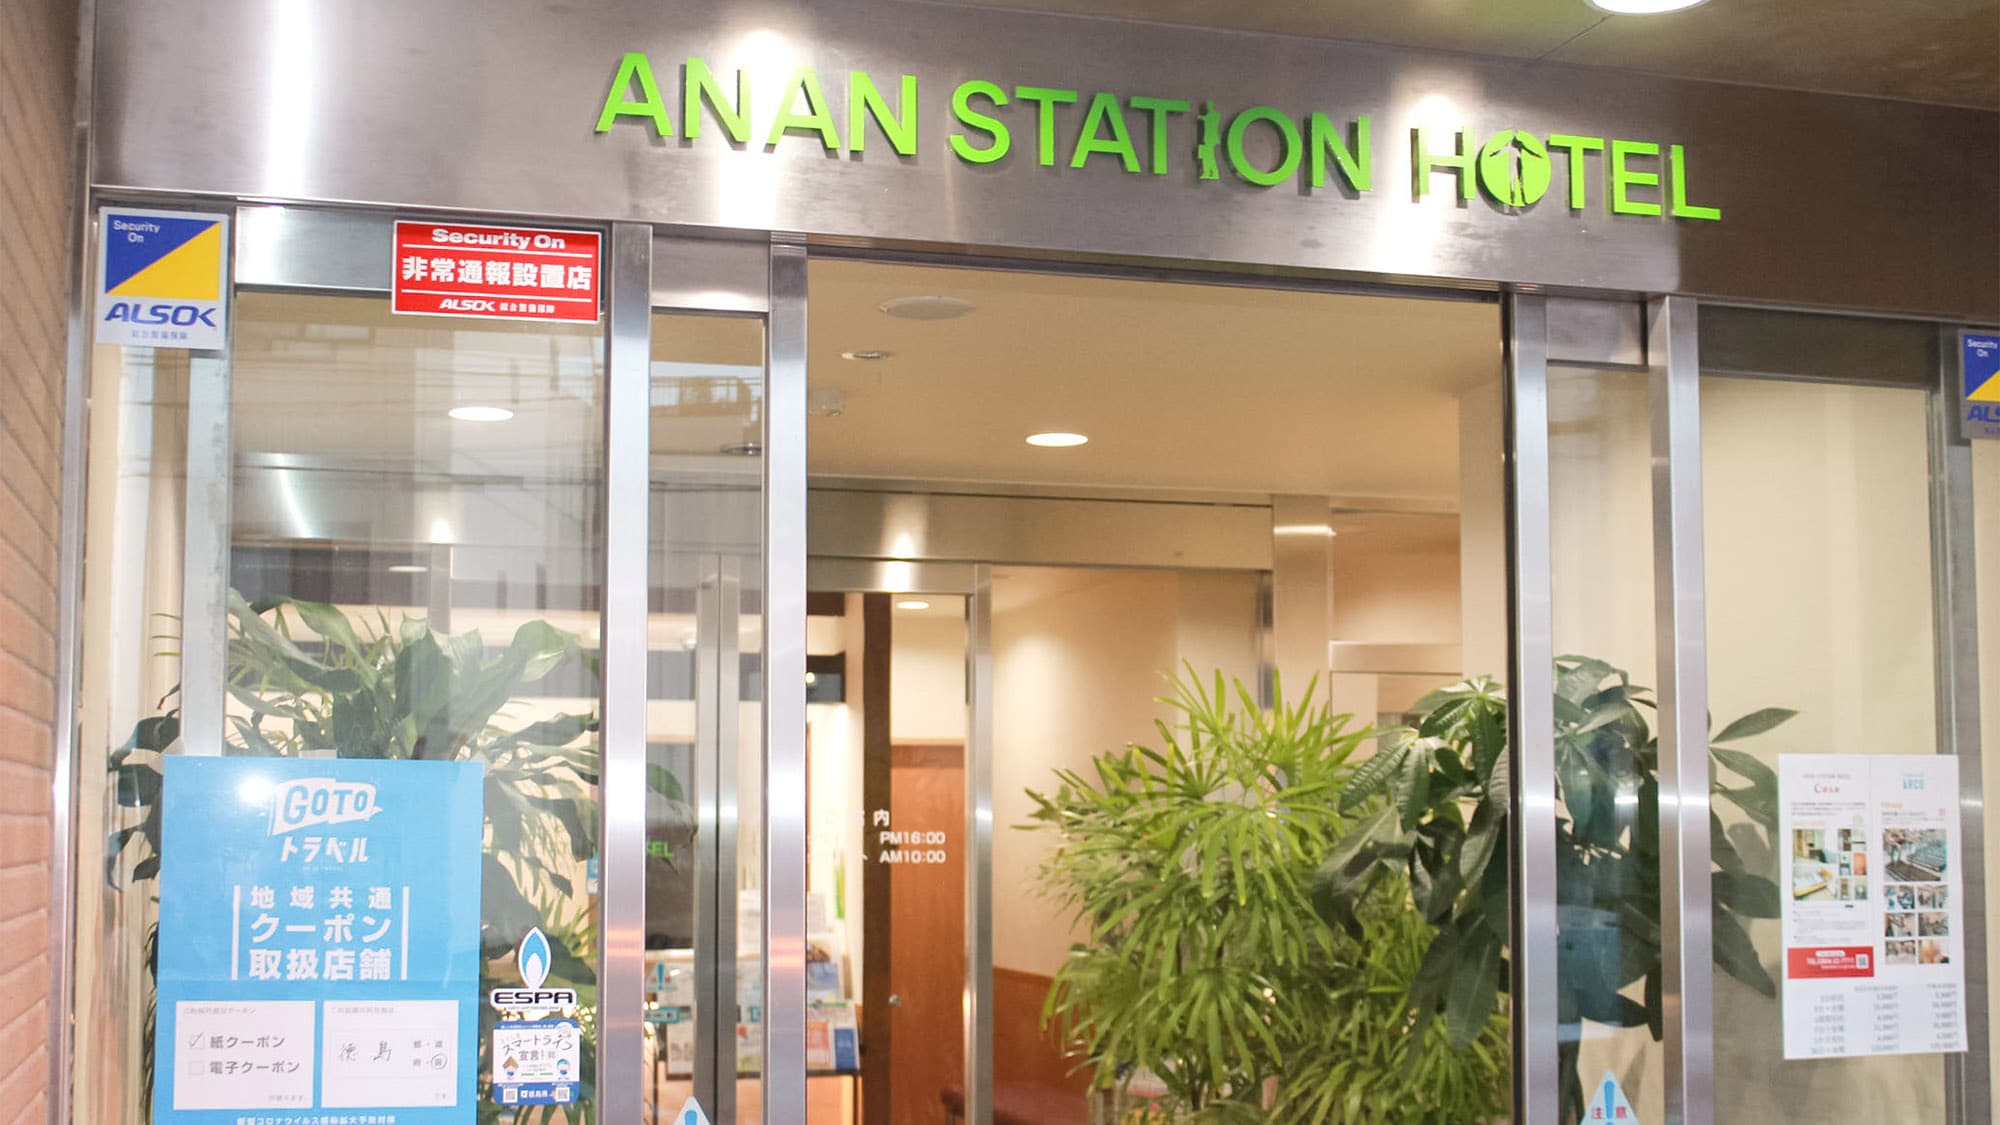 Selamat datang di Anan Station Hotel